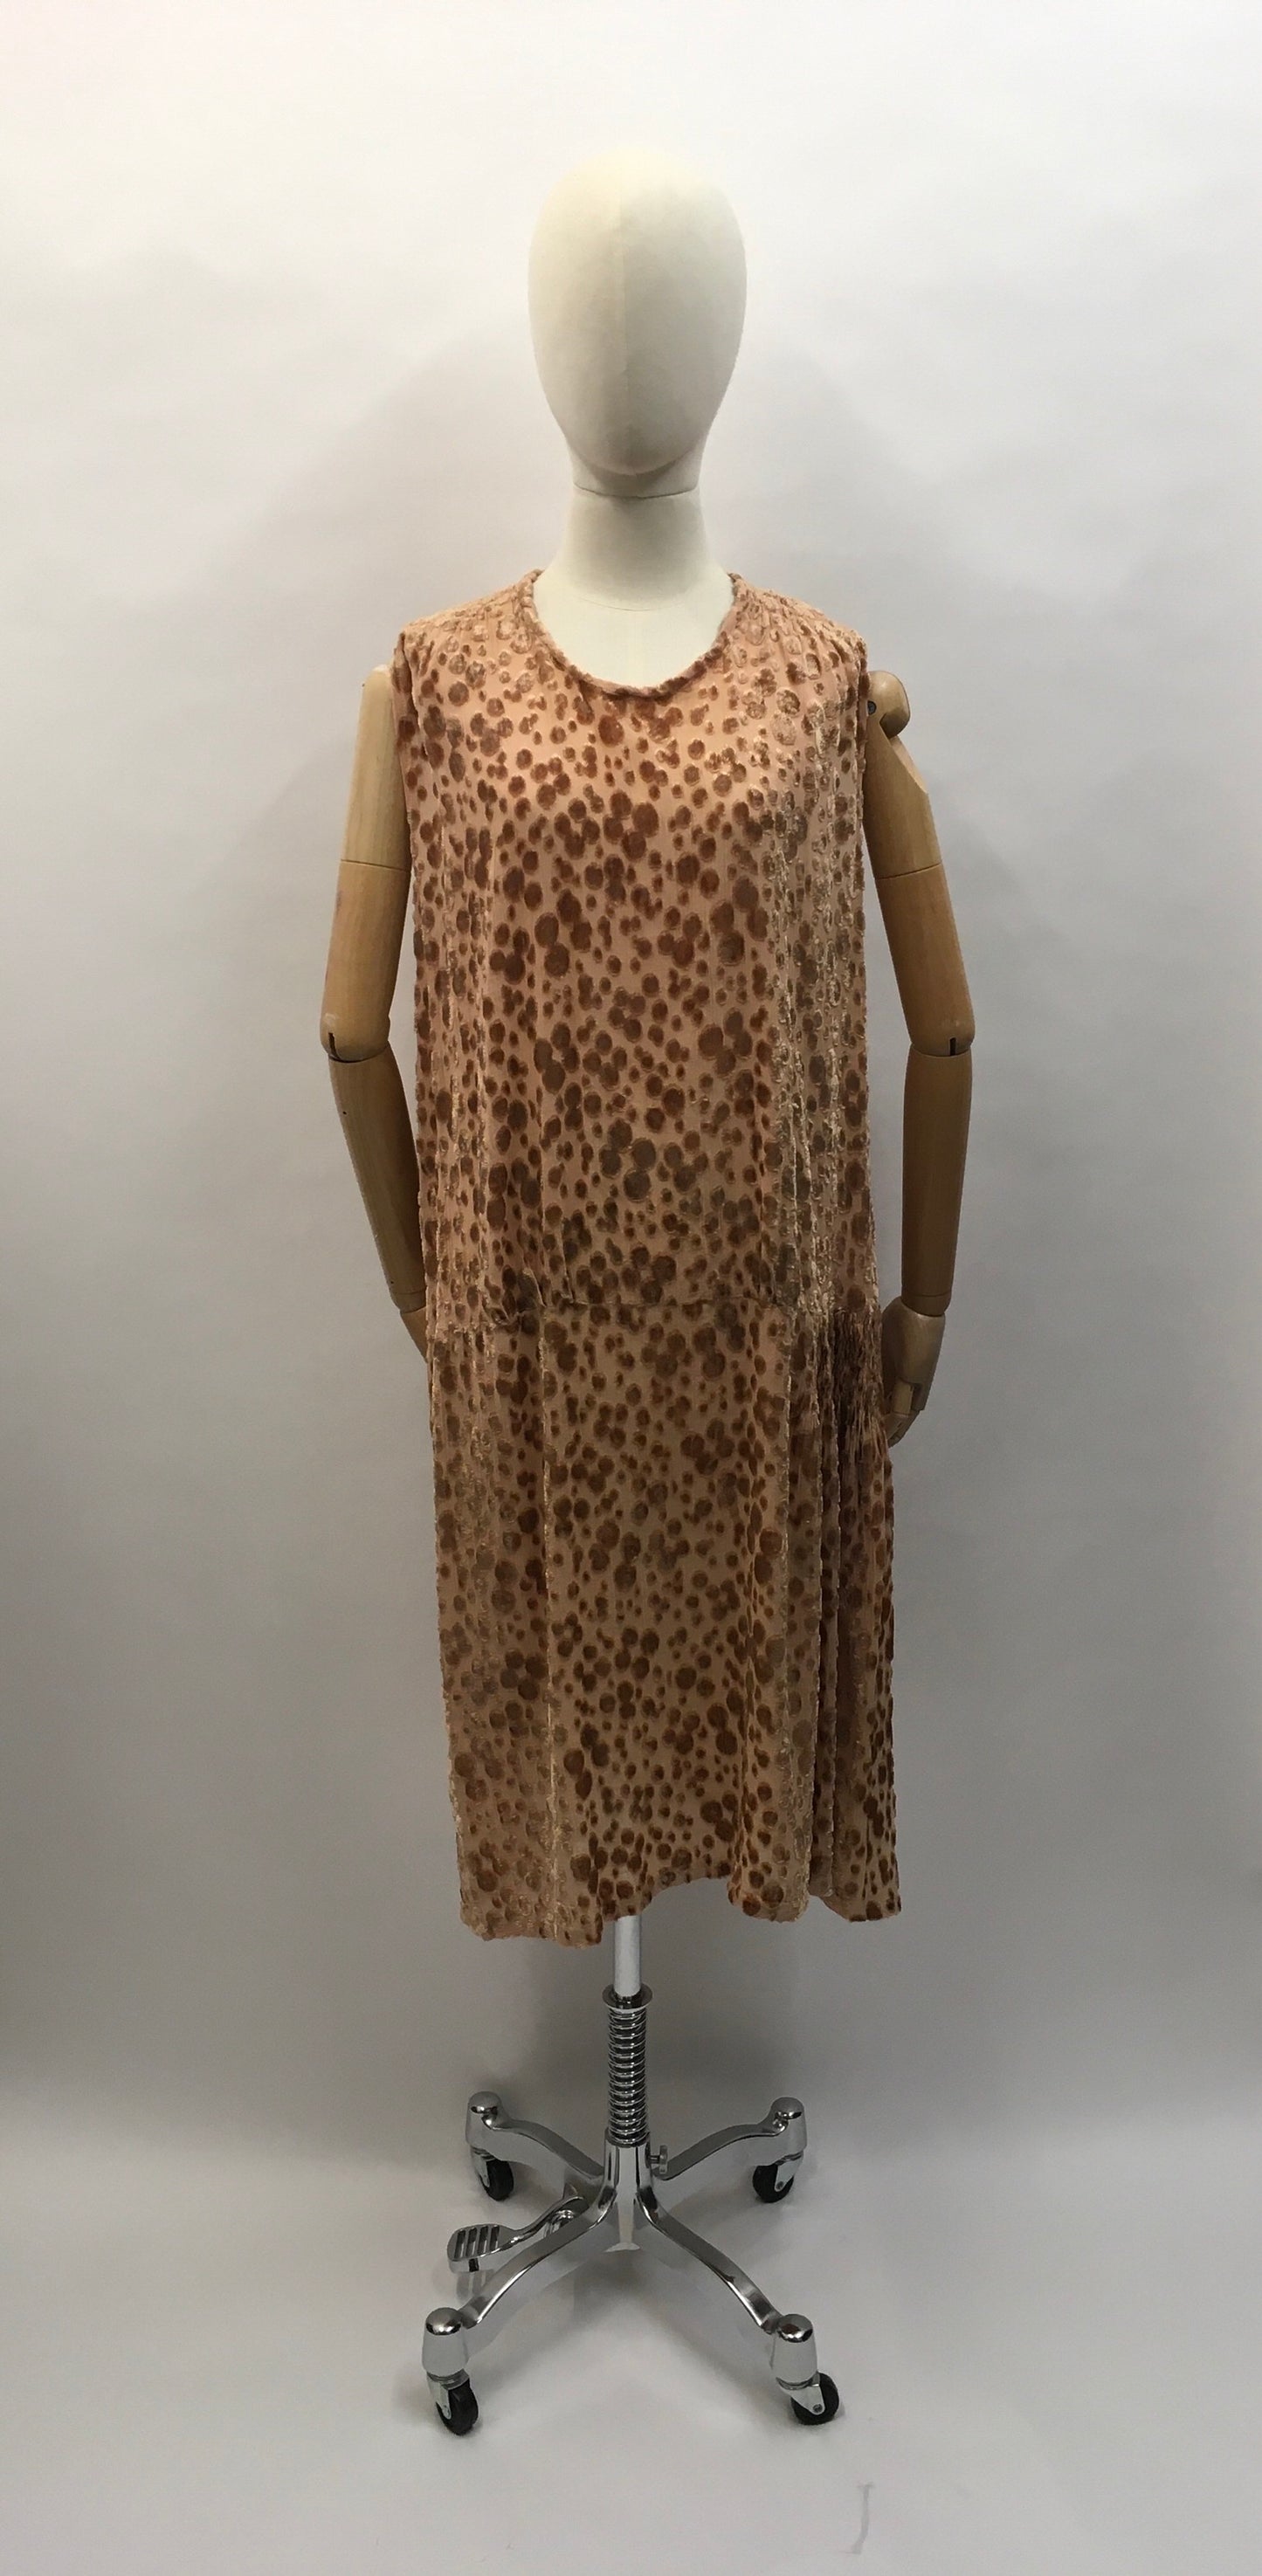 Original 1920’s Devore Dress - In a soft beige tone featuring ruched detailing